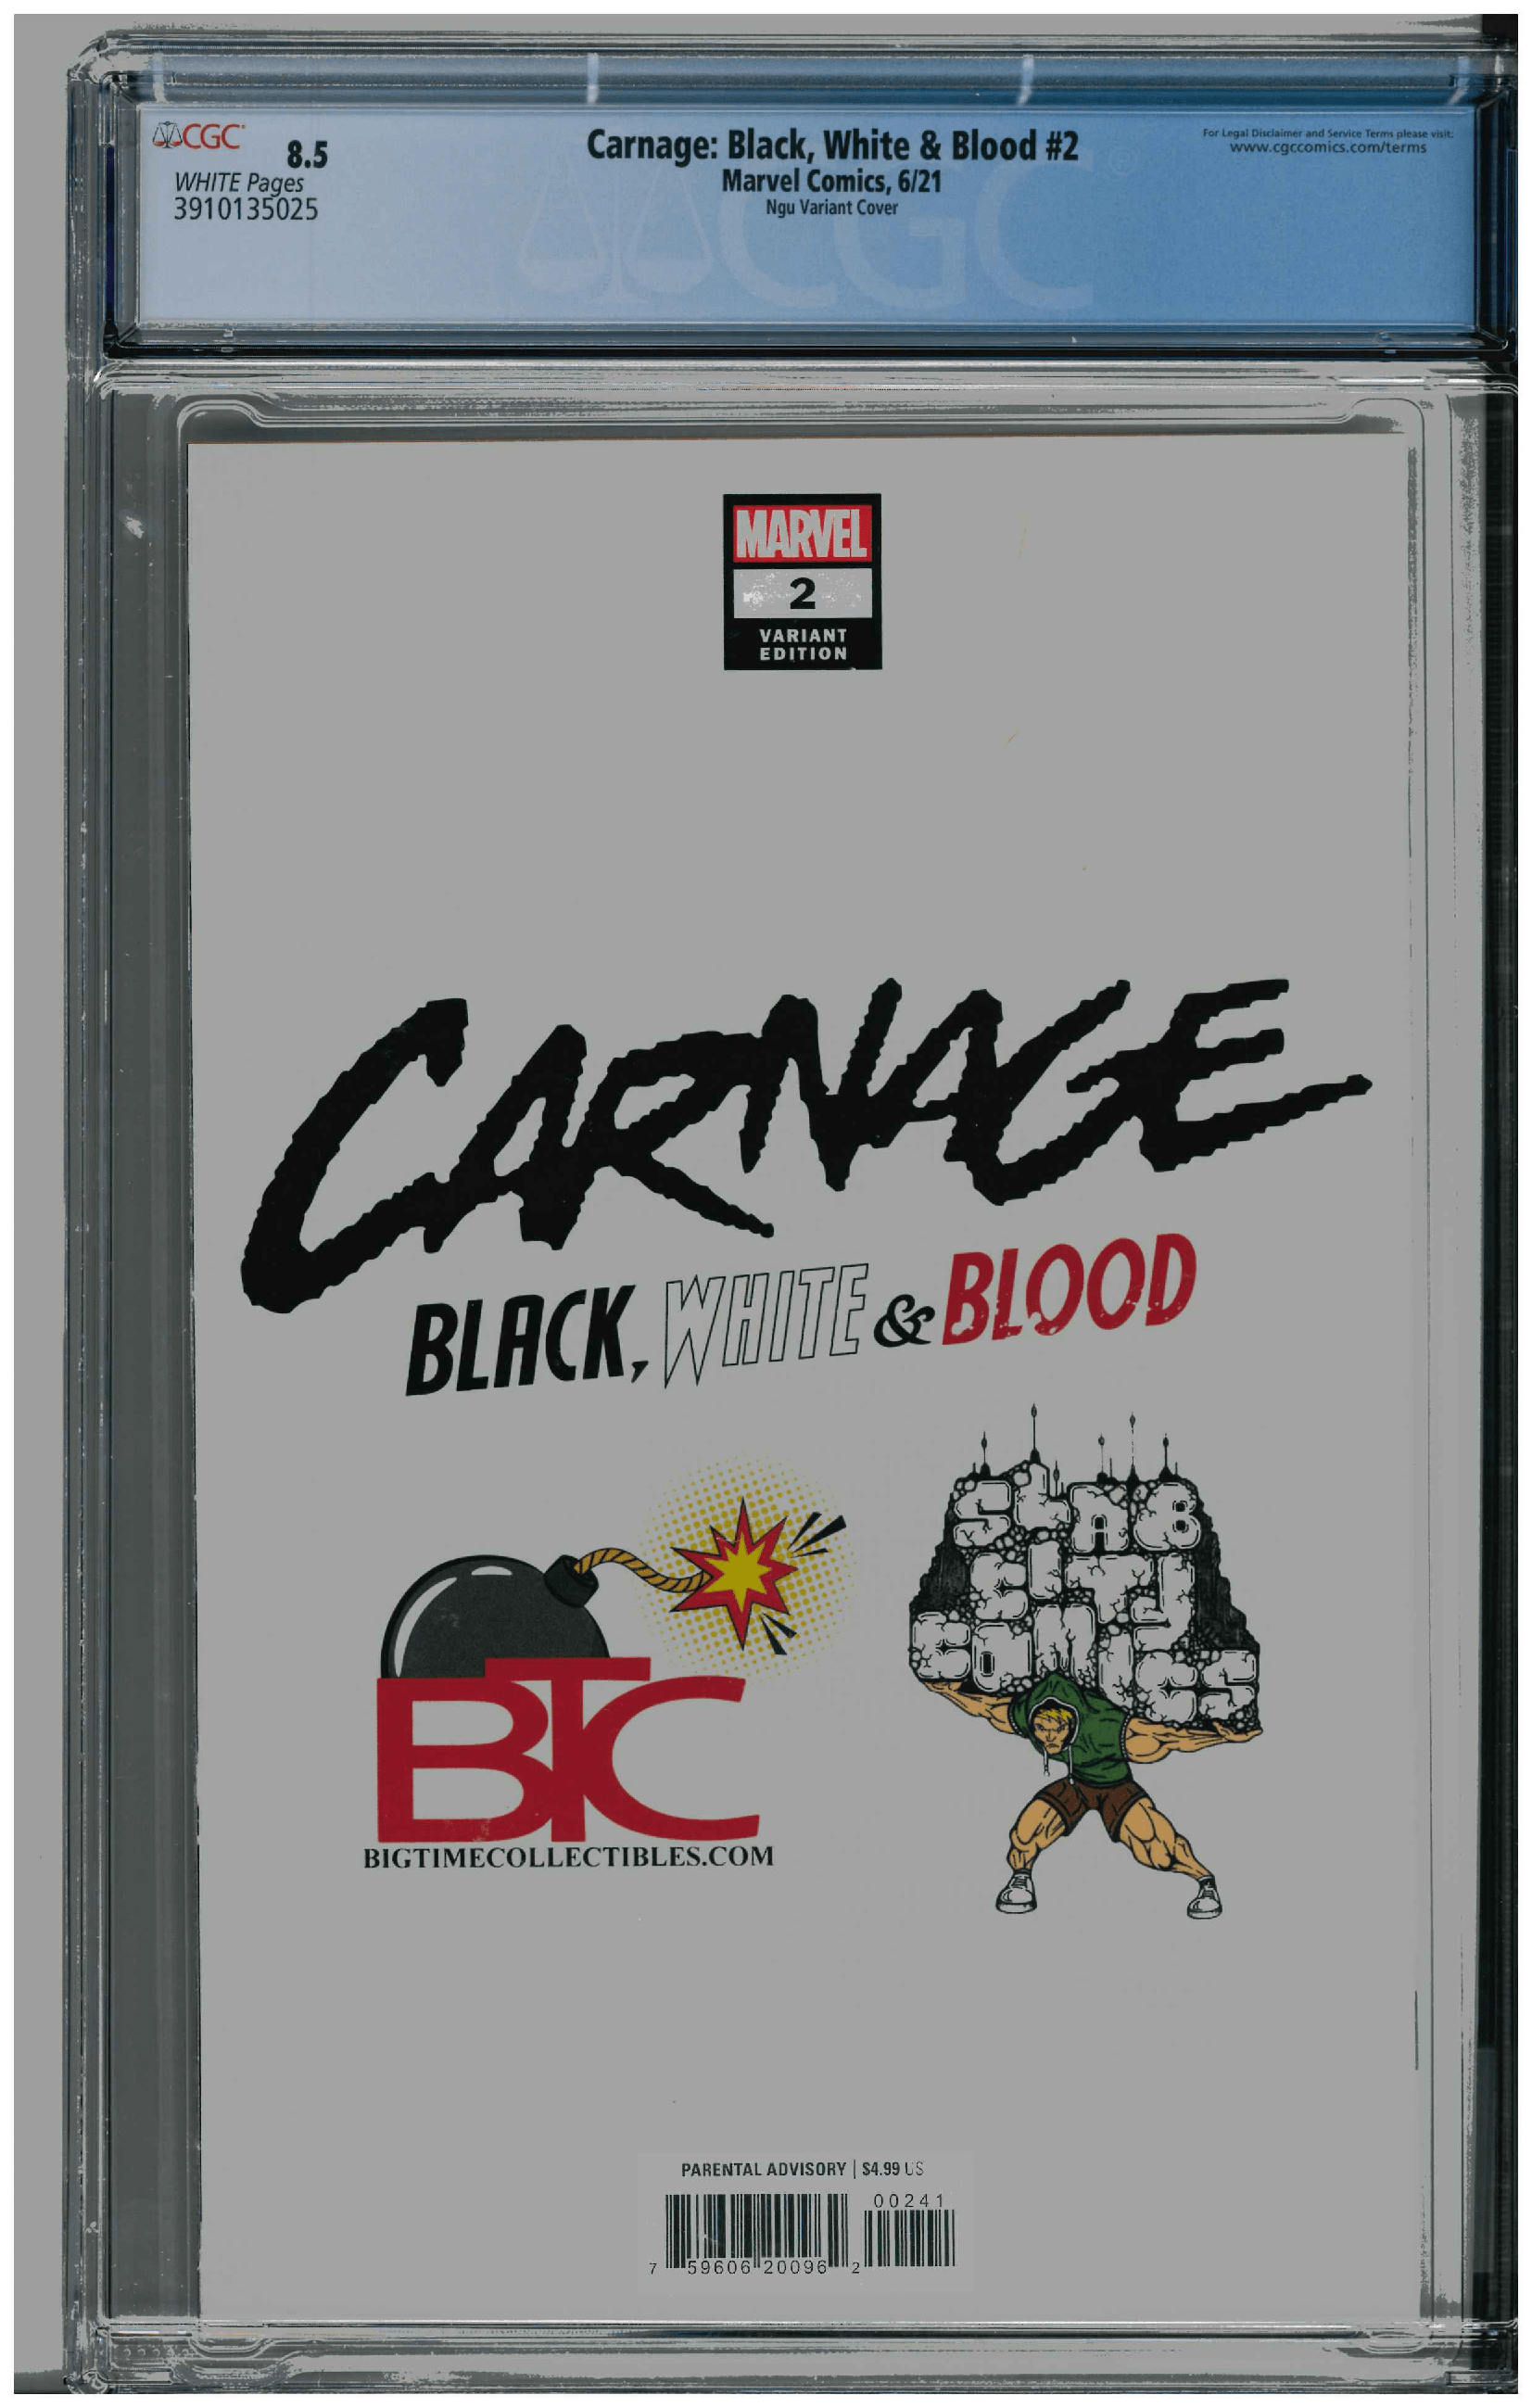 Carnage: Black, White & Blood #2 backside